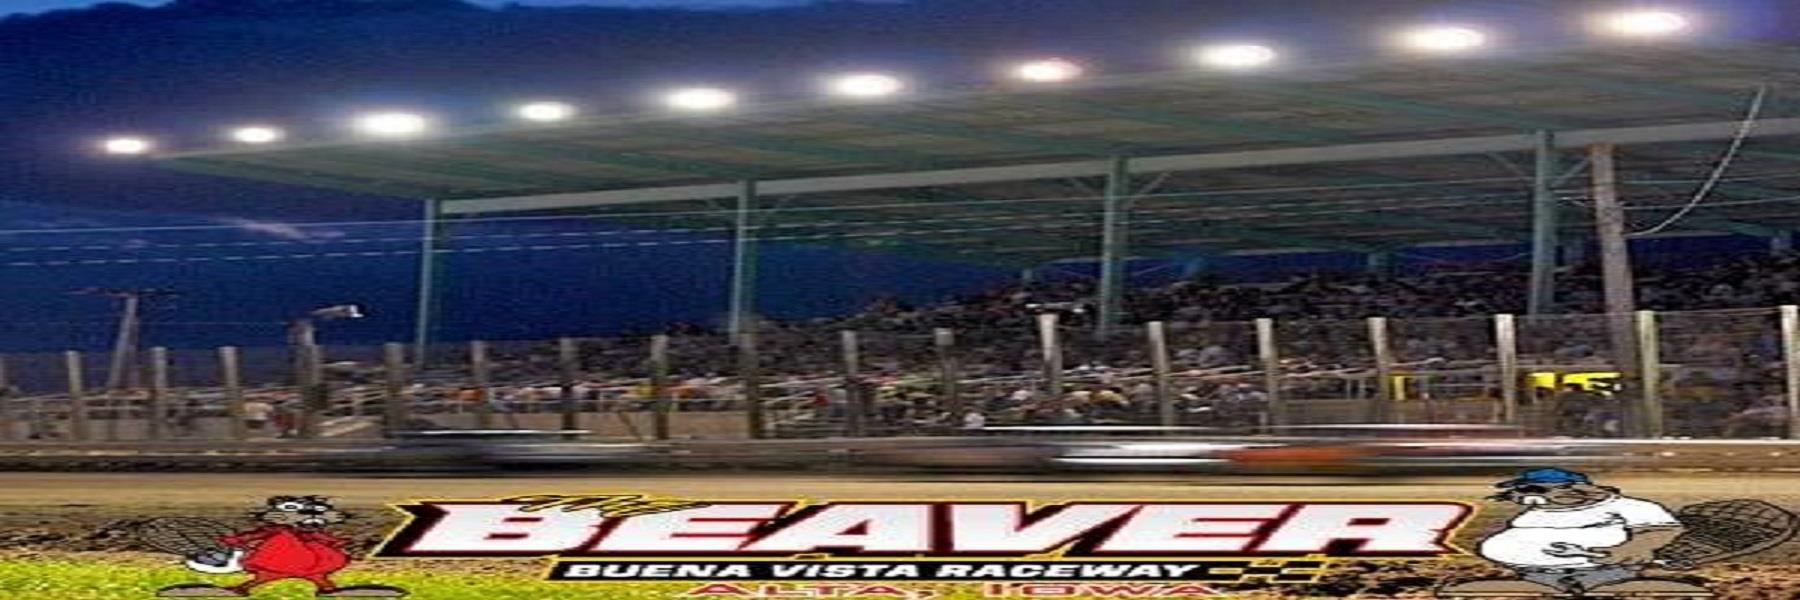 6/28/2023 - Buena Vista Raceway